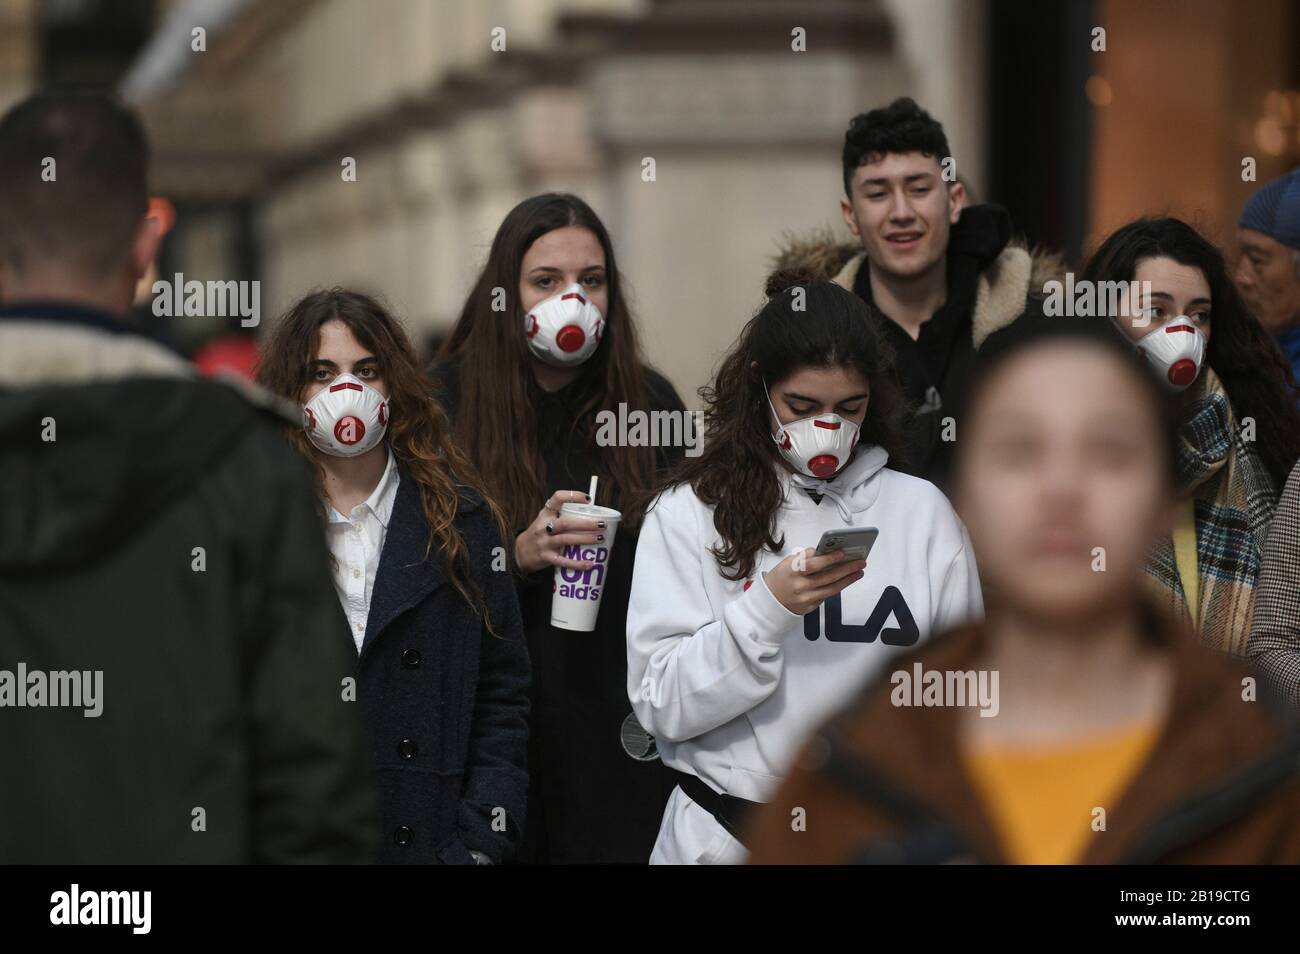 Emergencia por coronavirus en Milán, ciudadanos y turistas pasean por el centro de la ciudad con máscaras protectoras. Foto de stock